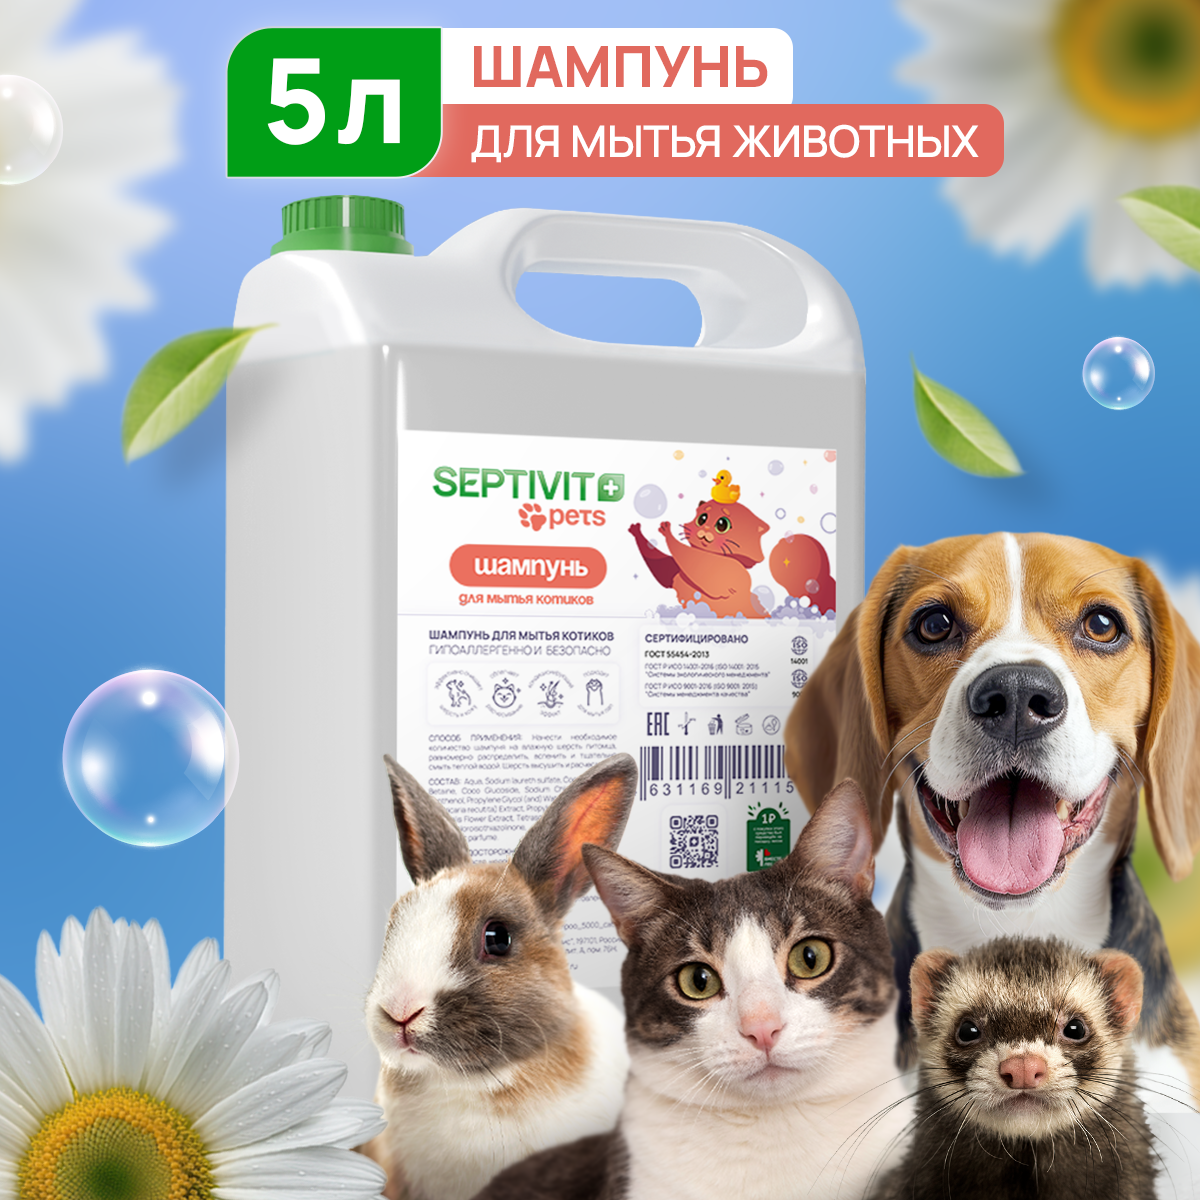 Шампунь для кошек Septivit Premium, 5 л